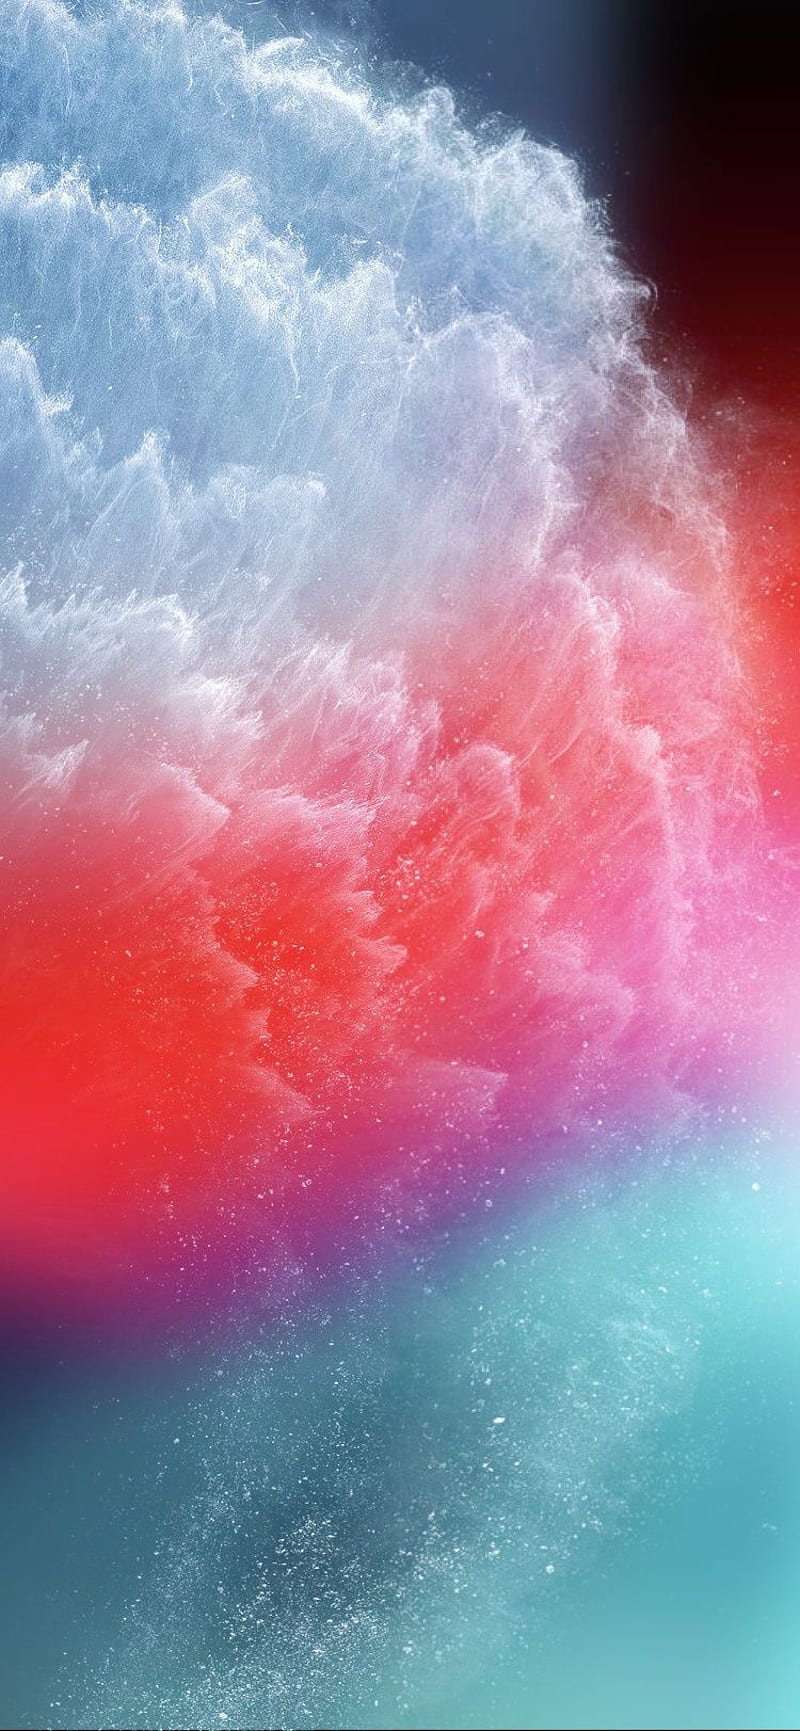 iPhone XS không chỉ sở hữu hàng loạt màu sắc độc đáo, còn là một trong những sản phẩm thuộc thiên hà iPhone đầy uy lực. Với vụ nổ của công nghệ, thiết bị này đem lại trải nghiệm vô cùng hấp dẫn và bắt mắt. Hãy khám phá những hình ảnh cầu vồng, trừu tượng và siêu đẹp của iPhone XS qua chiếc điện thoại của bạn ngay hôm nay.